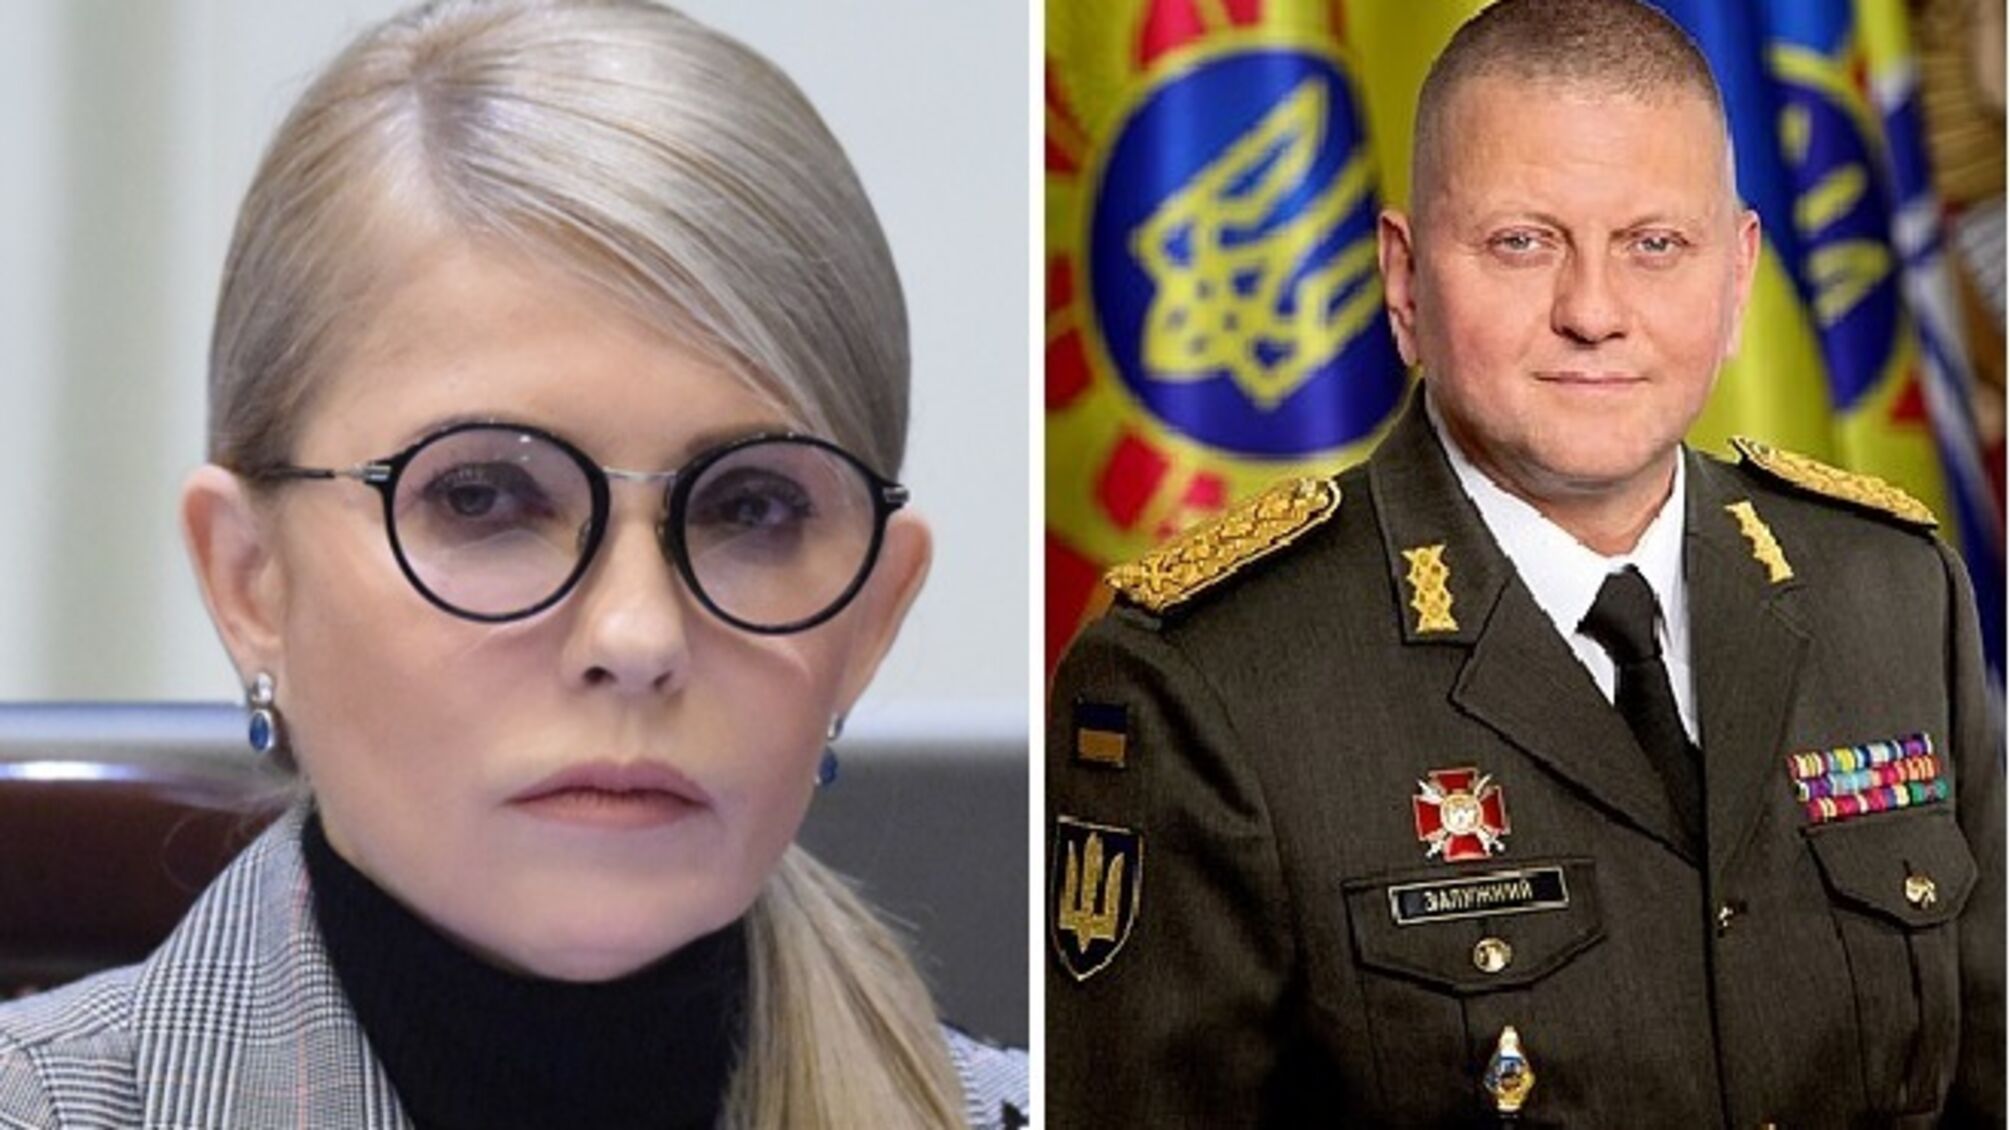 Тимошенко выступила категорически против отставки Залужного: глава 'Батькивщины' записала видеообращение